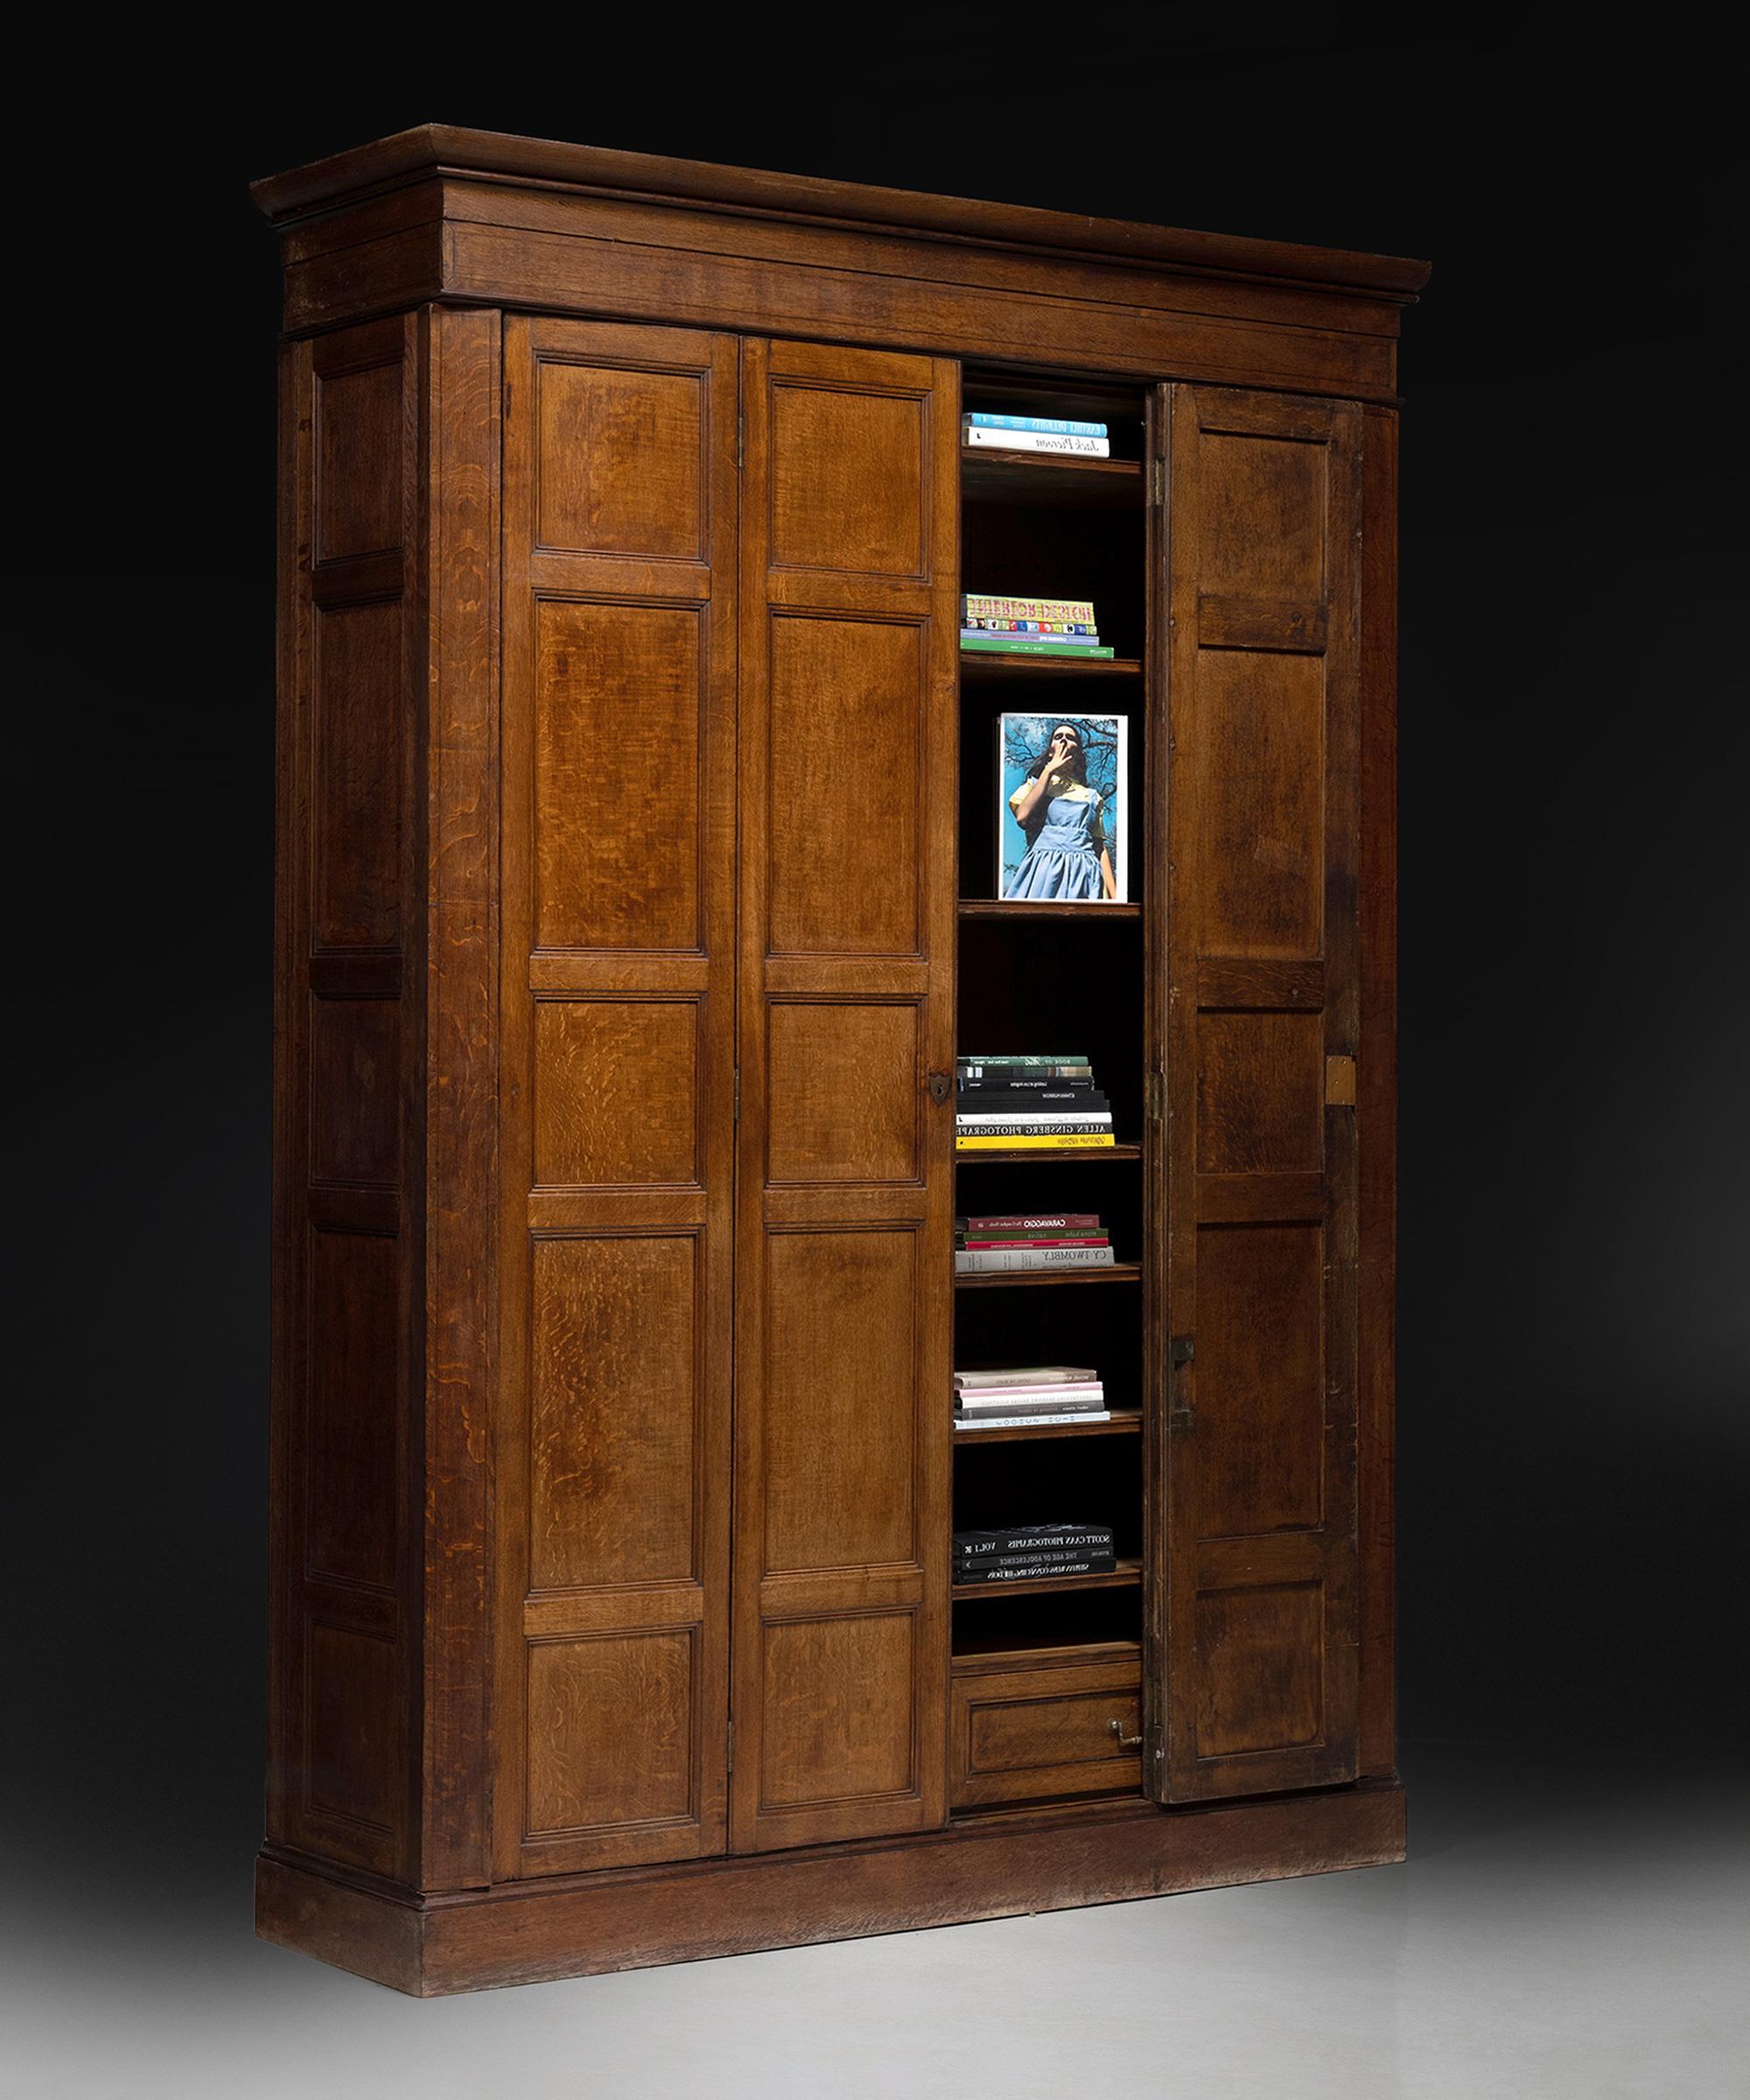 Cabinet en chêne

Italie vers 1810

Originaire d'un domaine italien. Fabriqué en chêne par un ébéniste anglais. Les portes Foldes peuvent se replier, transformant l'armoire en une étagère ouverte.

83 